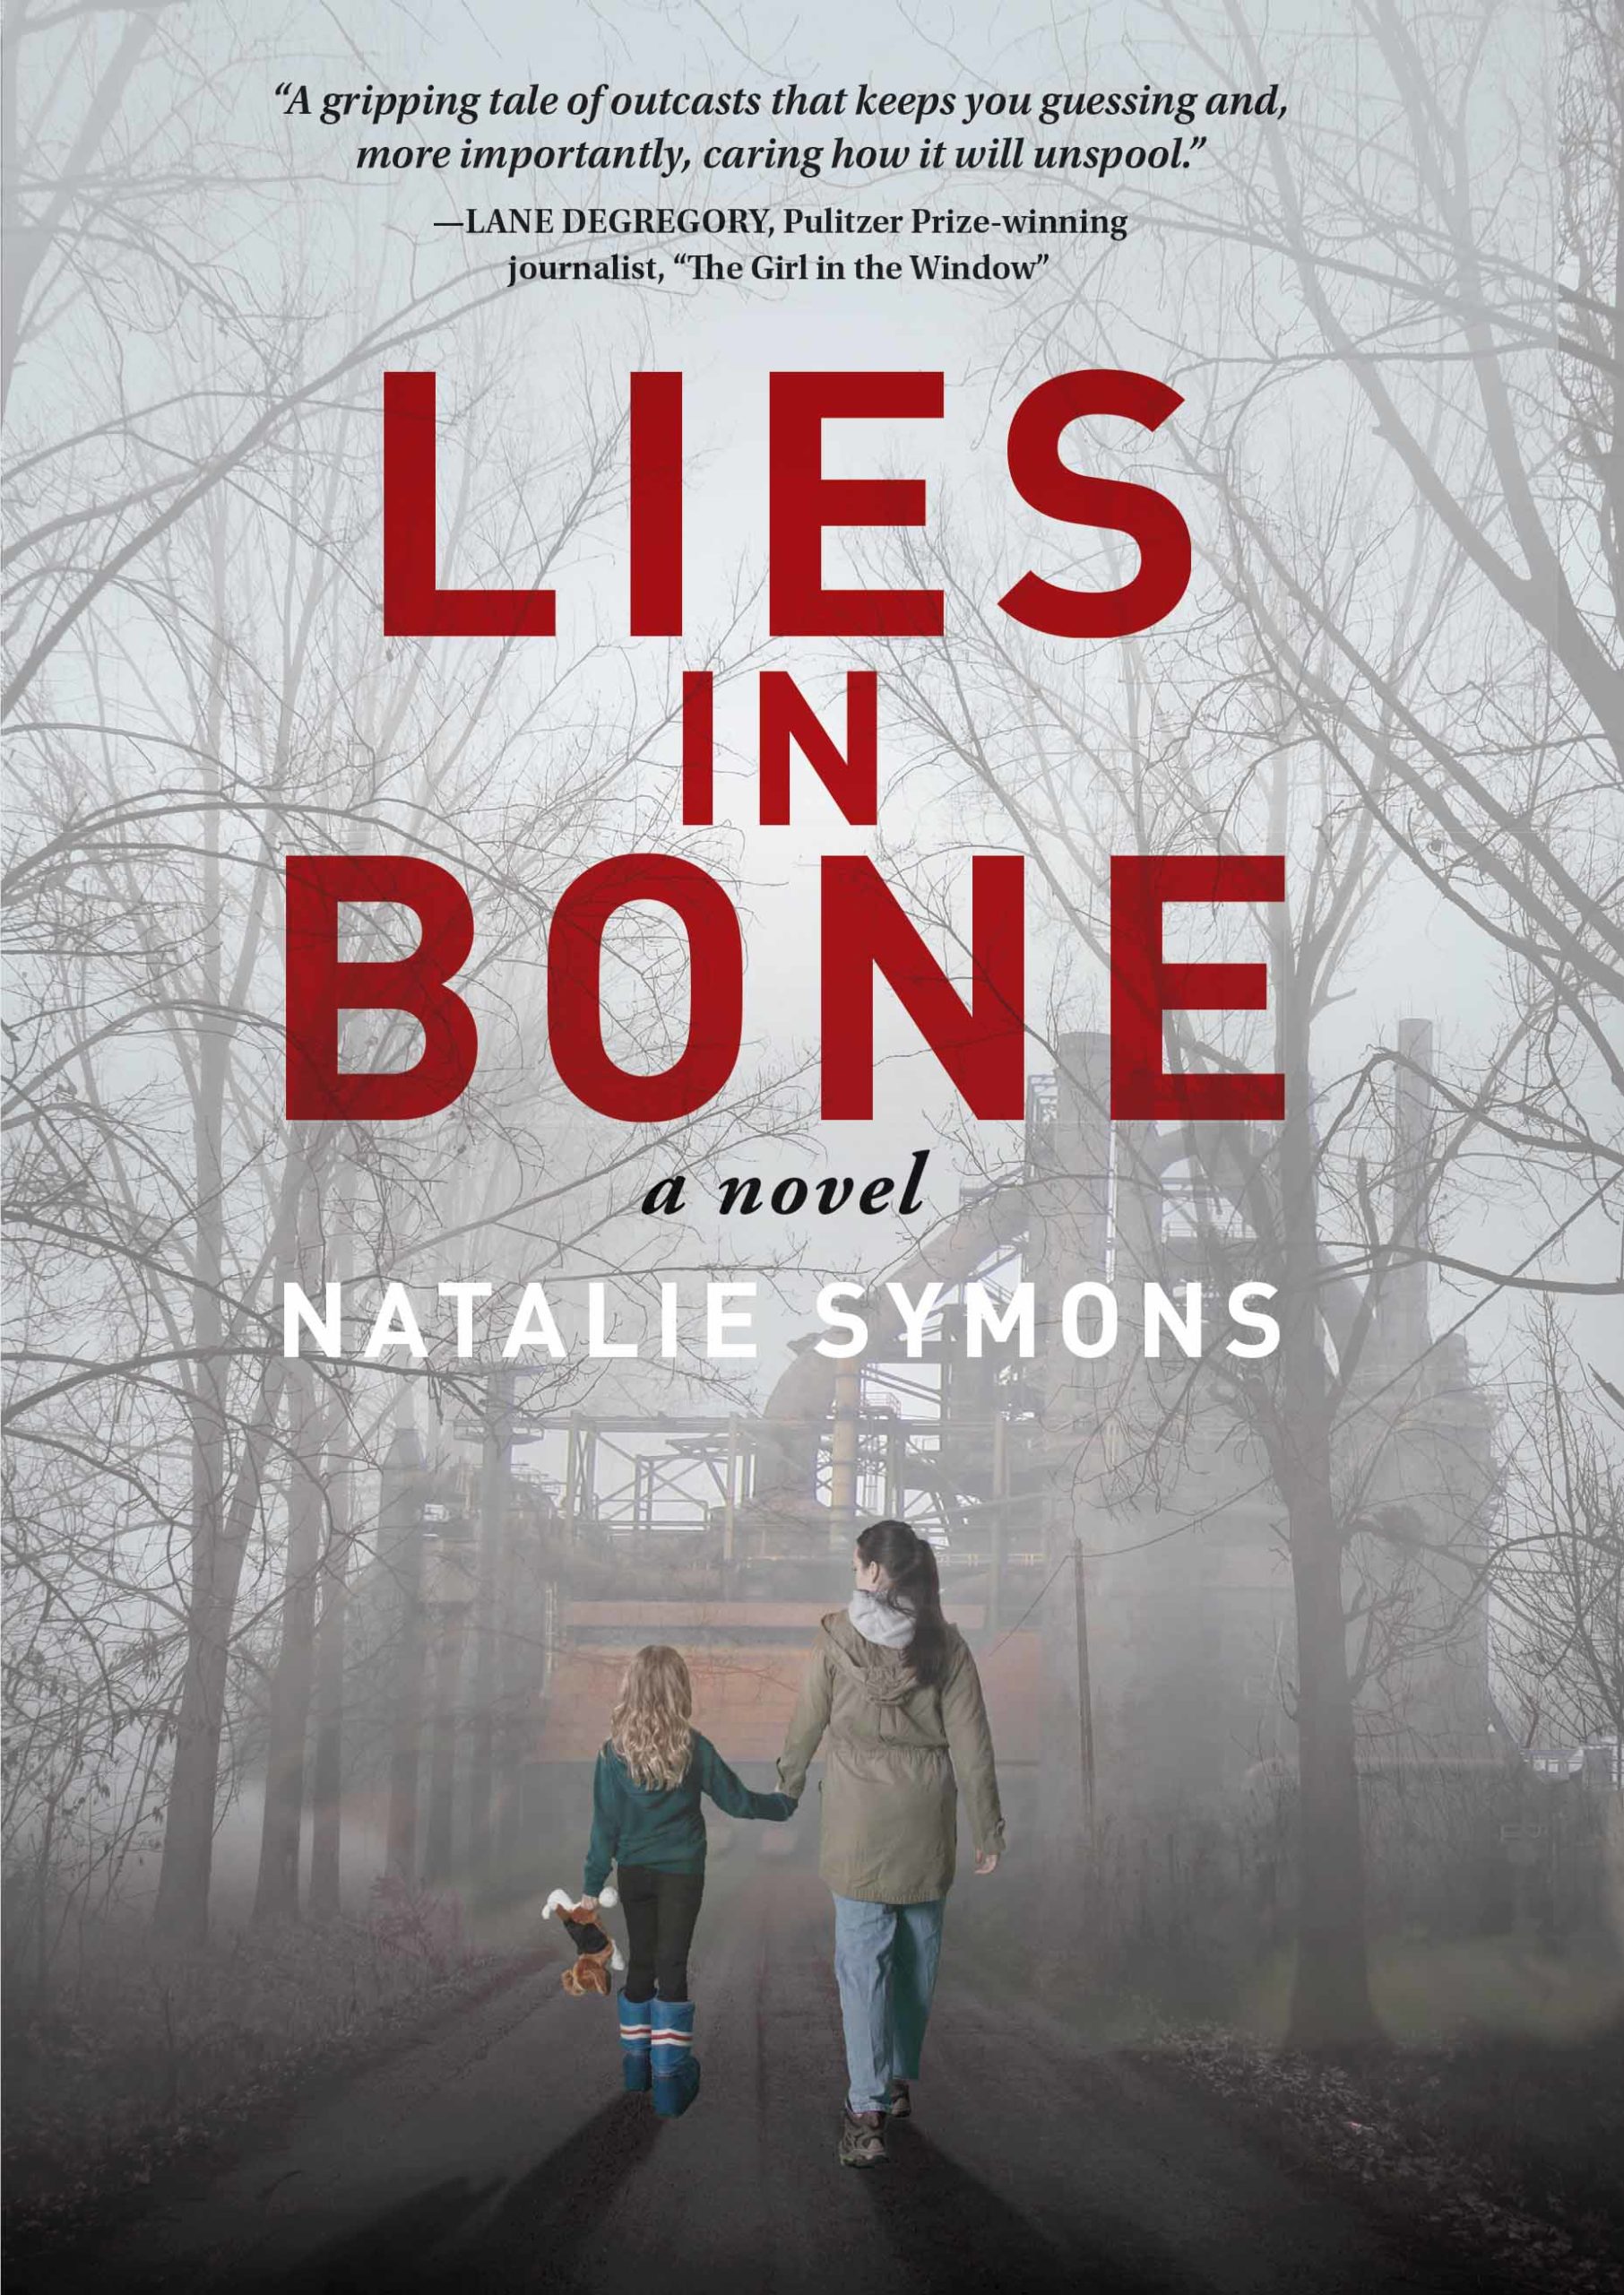 Lies in Bone by Natalie Symons